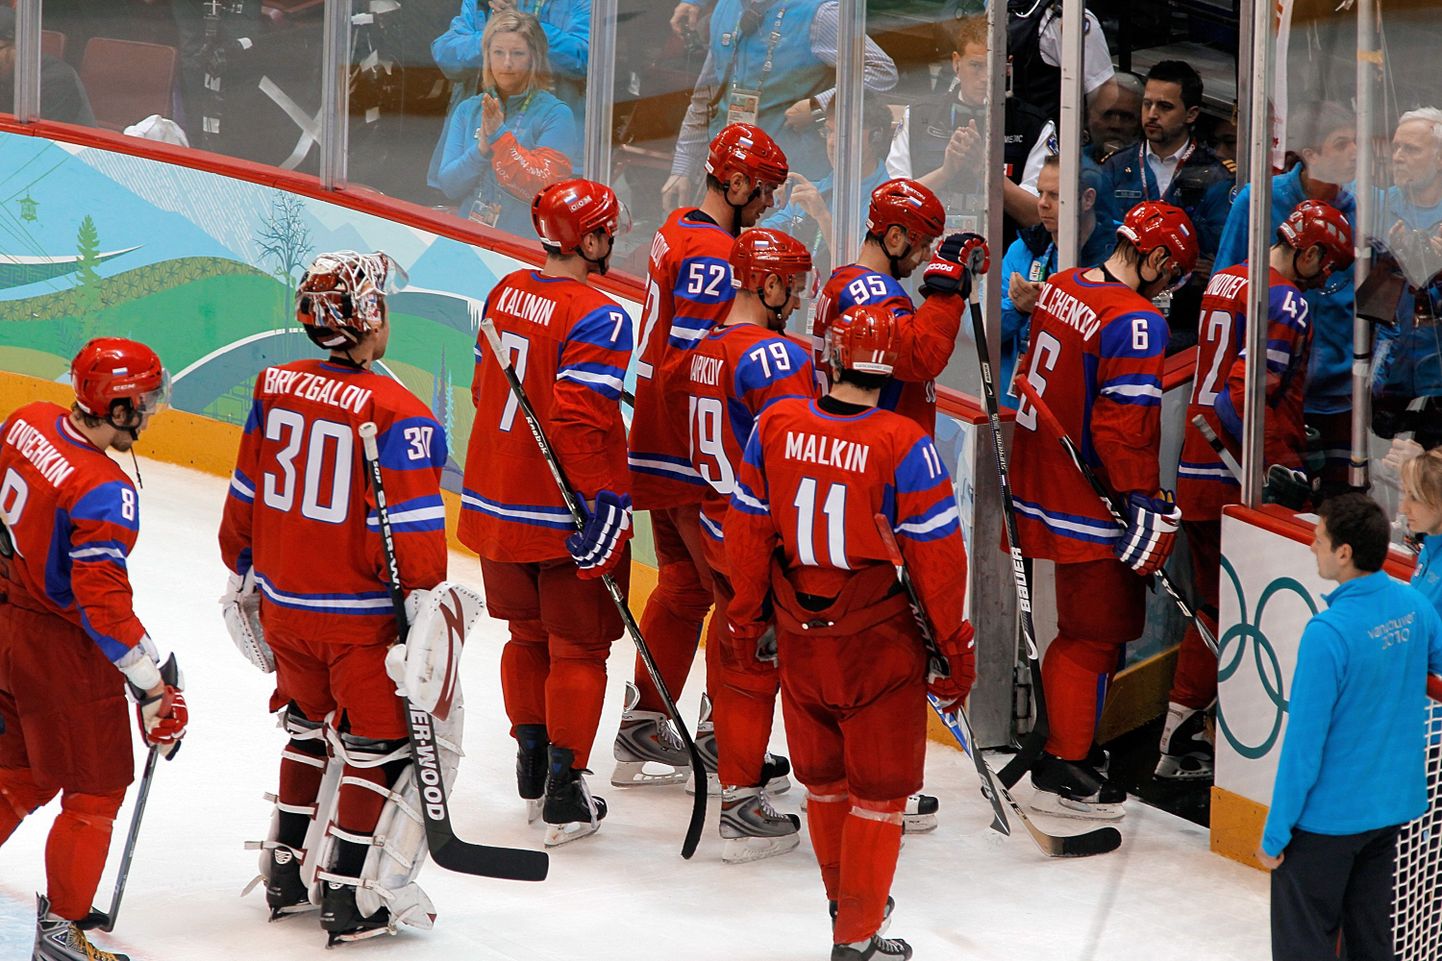 Venemaa jäähokikoondis lahkus pärast Kanadalt saadud hävitavat 3:7 kaotust jäält noruspäi